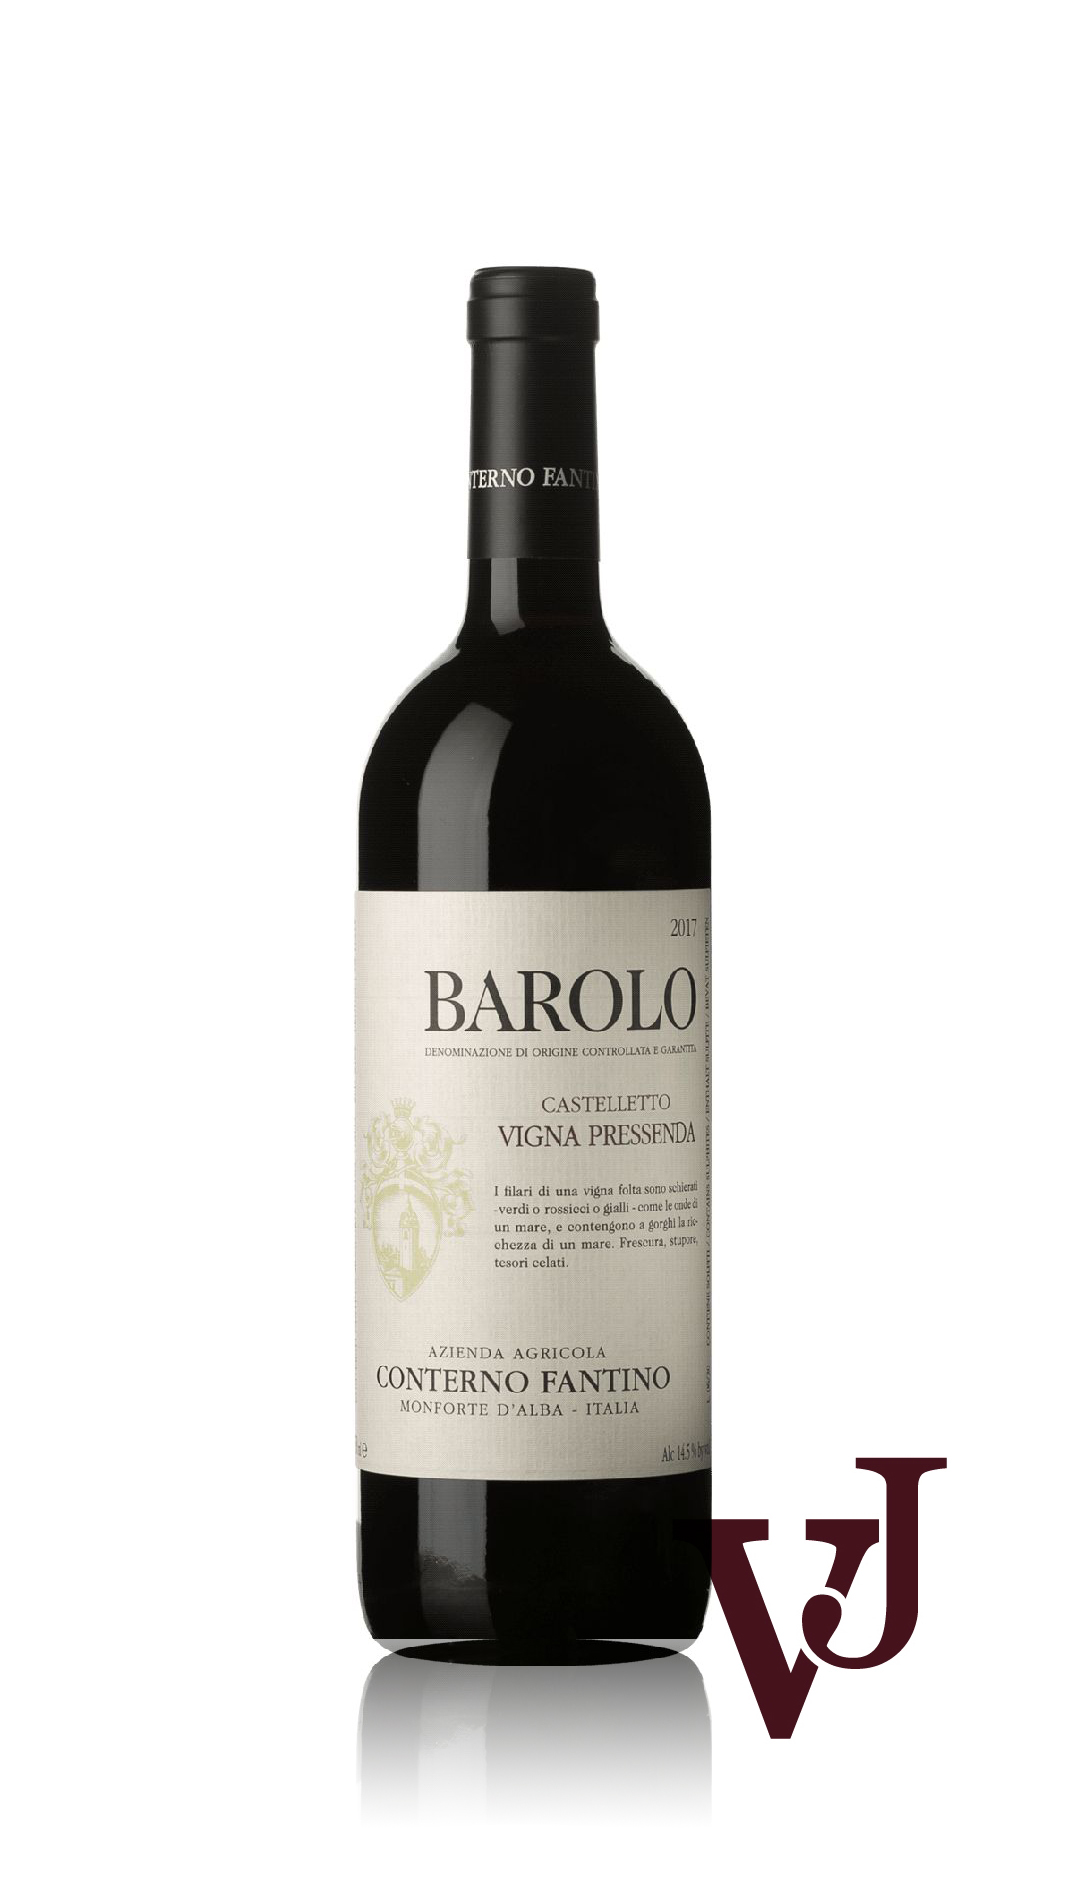 Rött Vin - Barolo Castelleto Vigna Pressenda Conterno Fantino artikel nummer 9297401 från producenten Conterno Fantino från området Italien